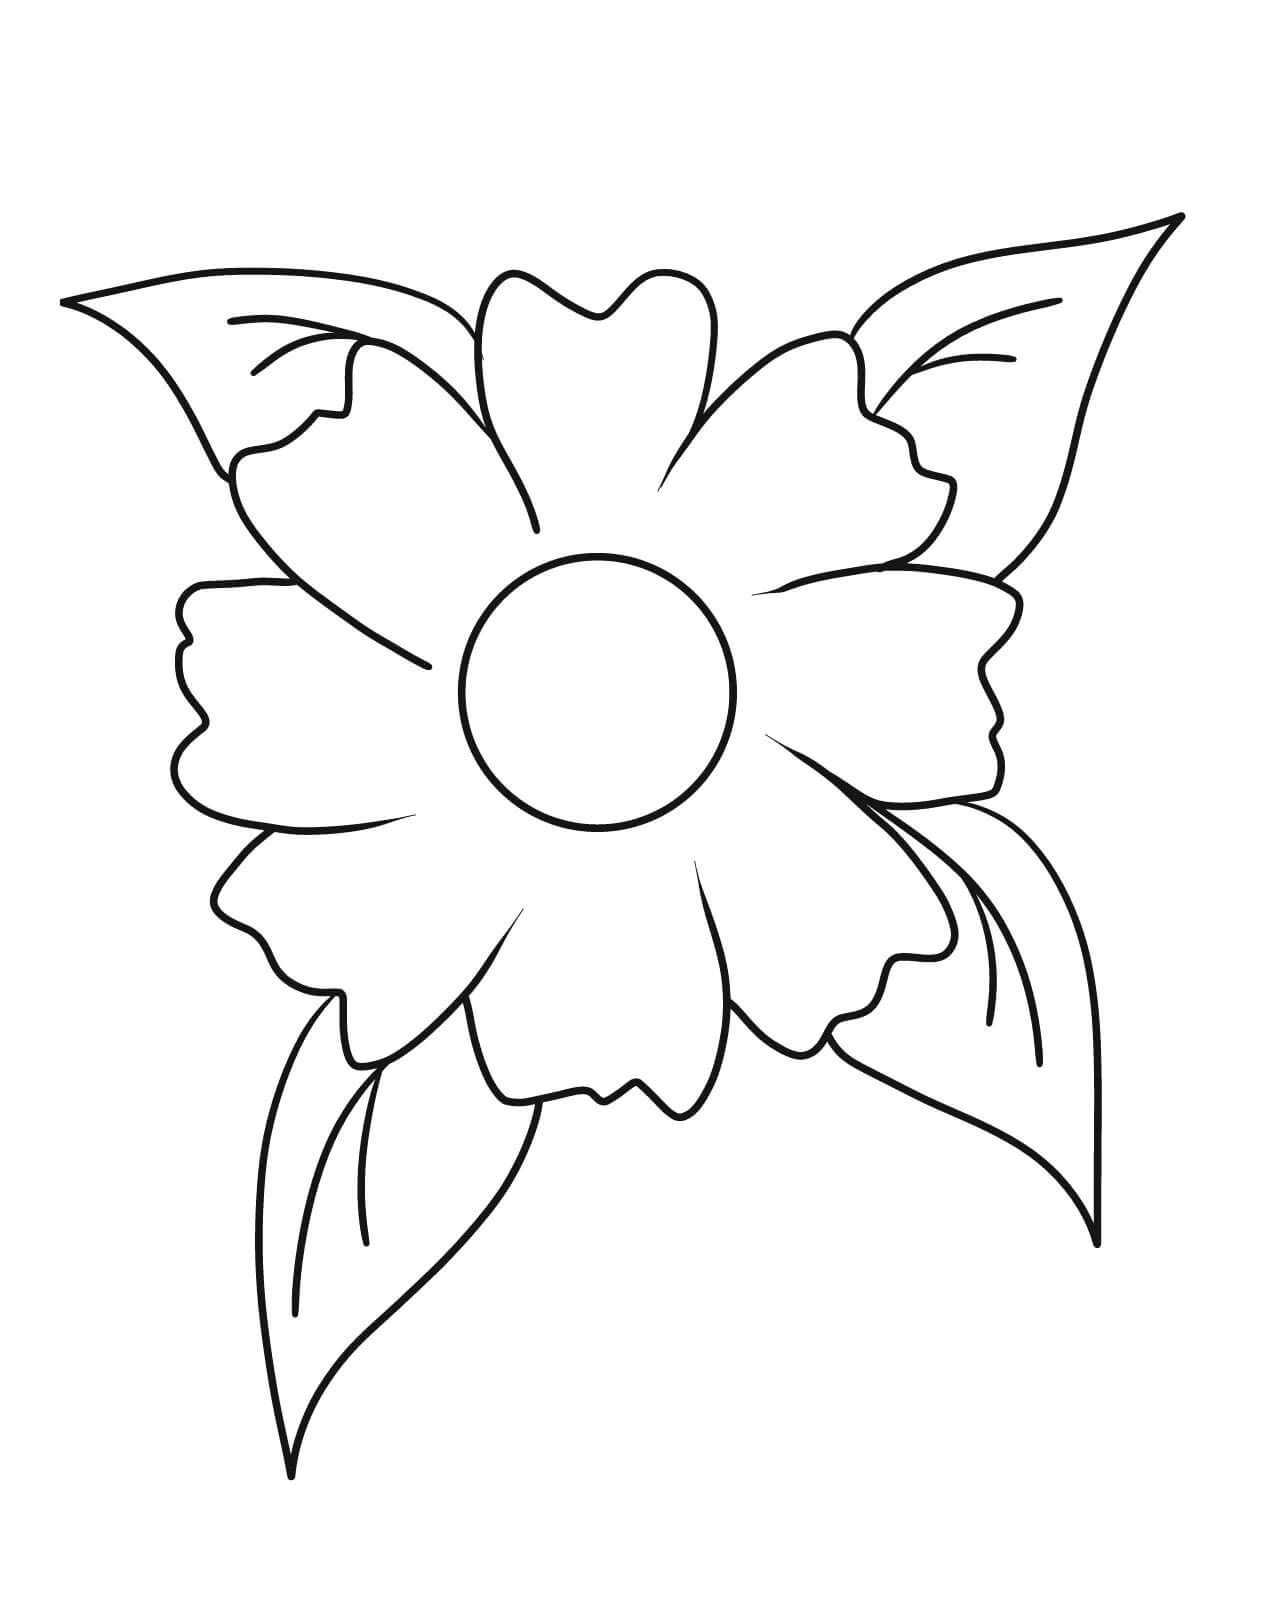 간단한 꽃 – 시트 24 coloring page